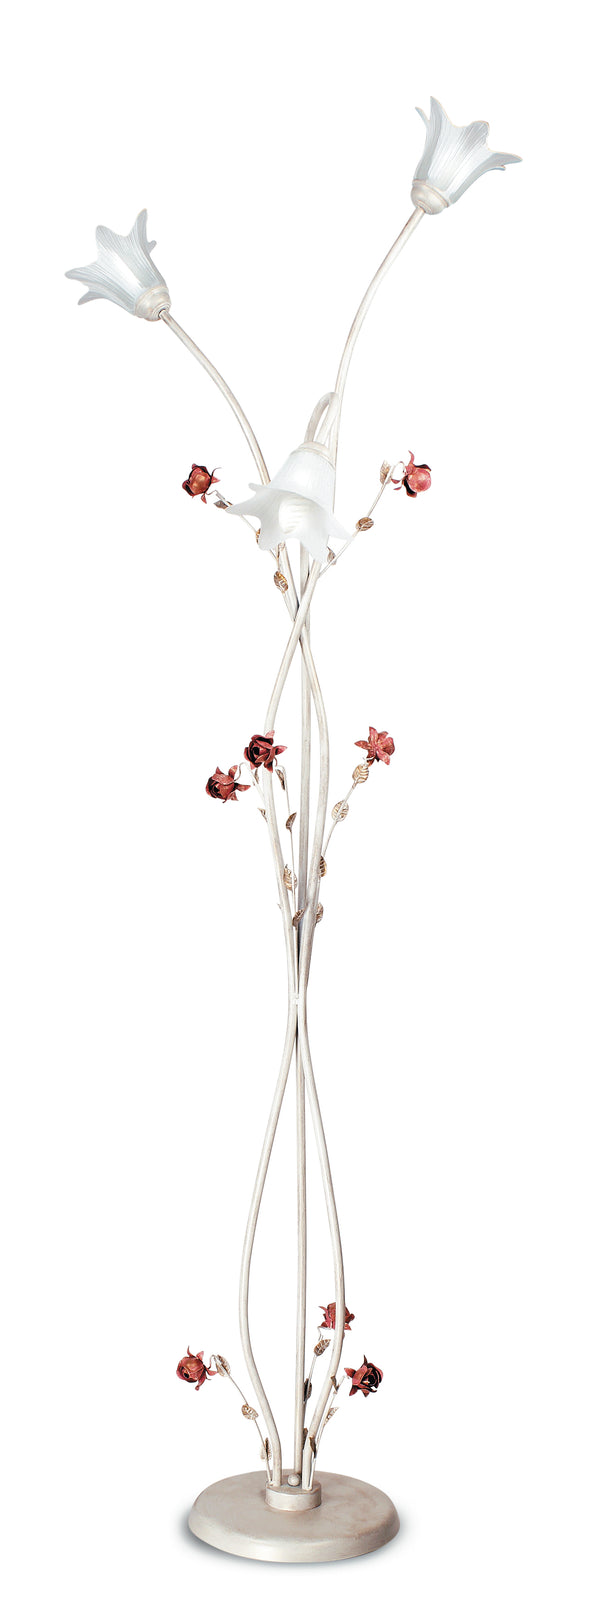 Piantana Elegante Rose Metallo Bianco Rosso diffusori Vetro Lampada da Terra Classica E14 acquista